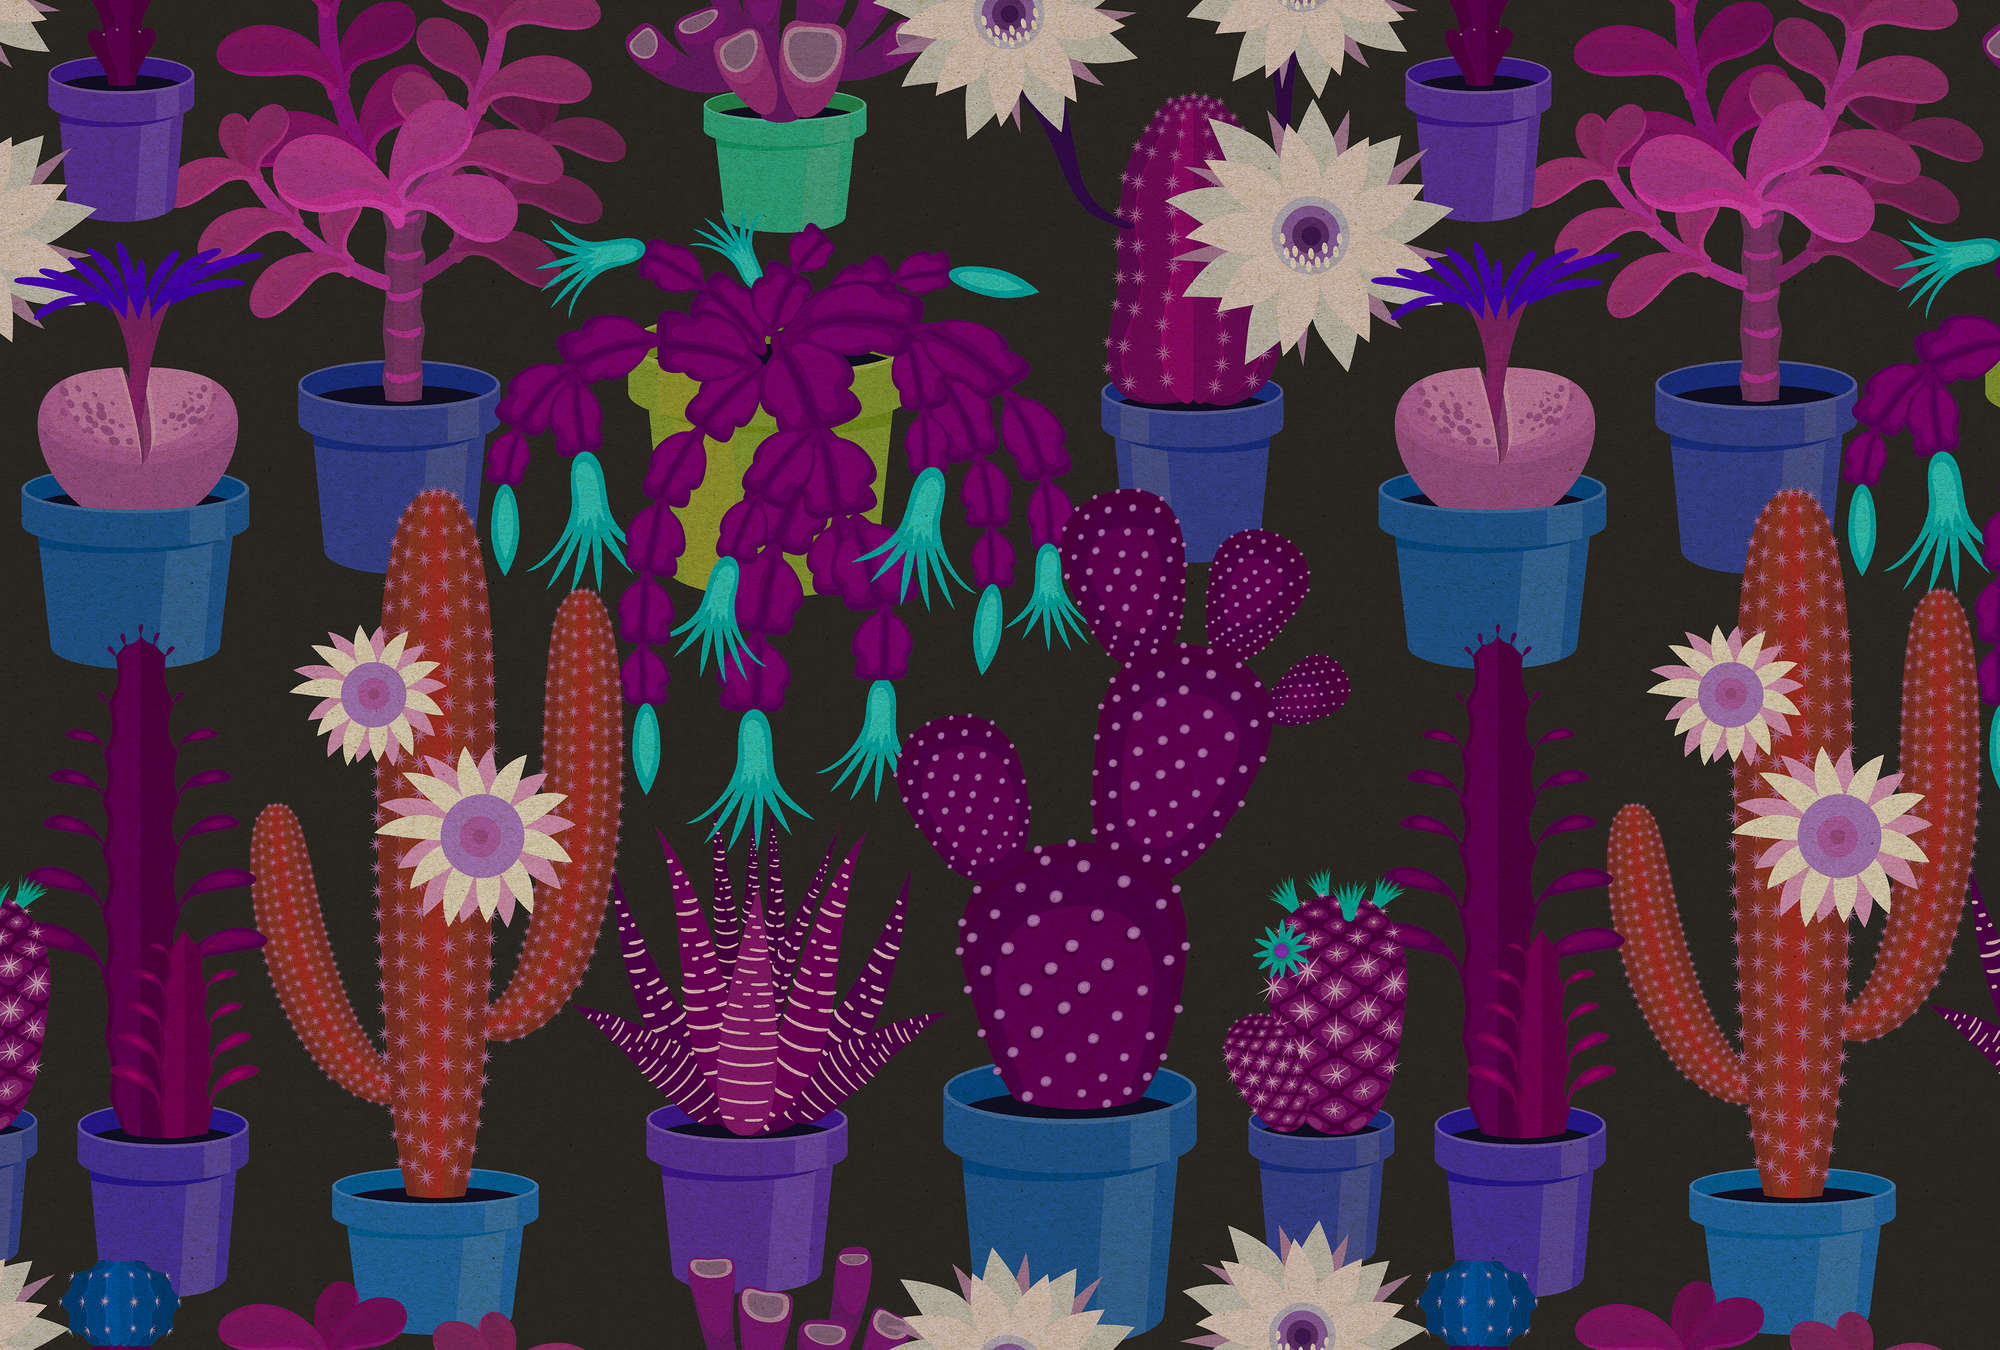             Cactus garden 1 - Fototapete in Pappe Struktur mit bunten Kakteen im Comic Stil – Blau, Orange | Mattes Glattvlies
        